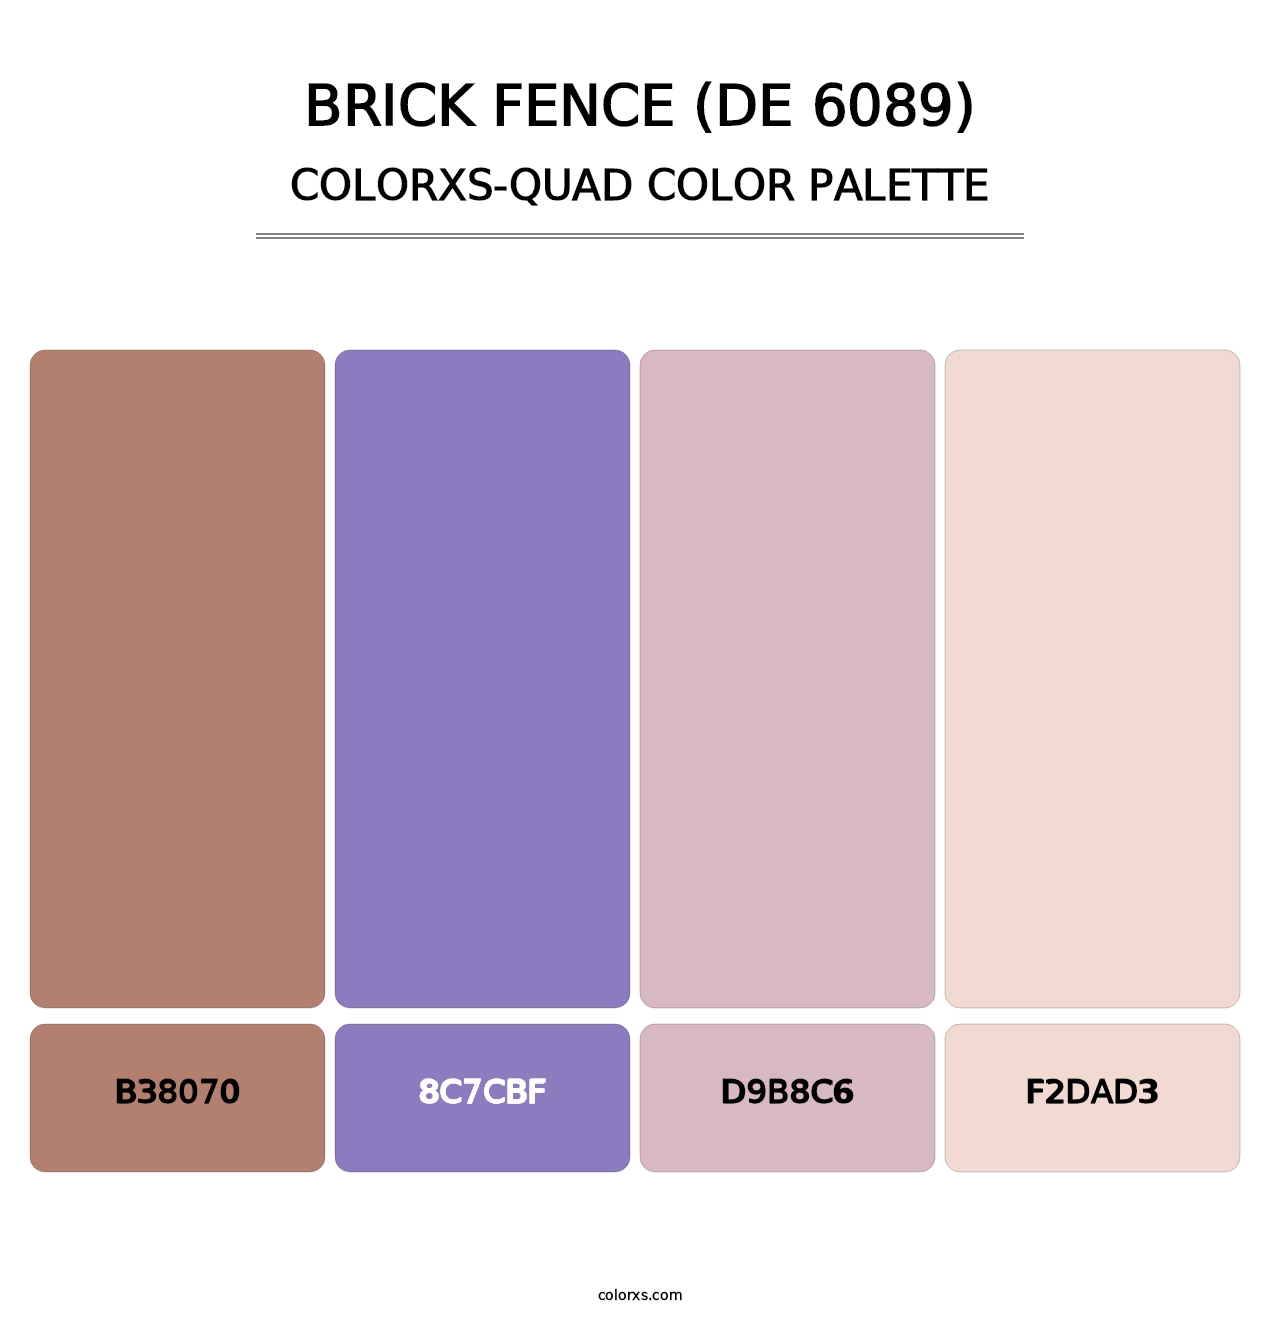 Brick Fence (DE 6089) - Colorxs Quad Palette